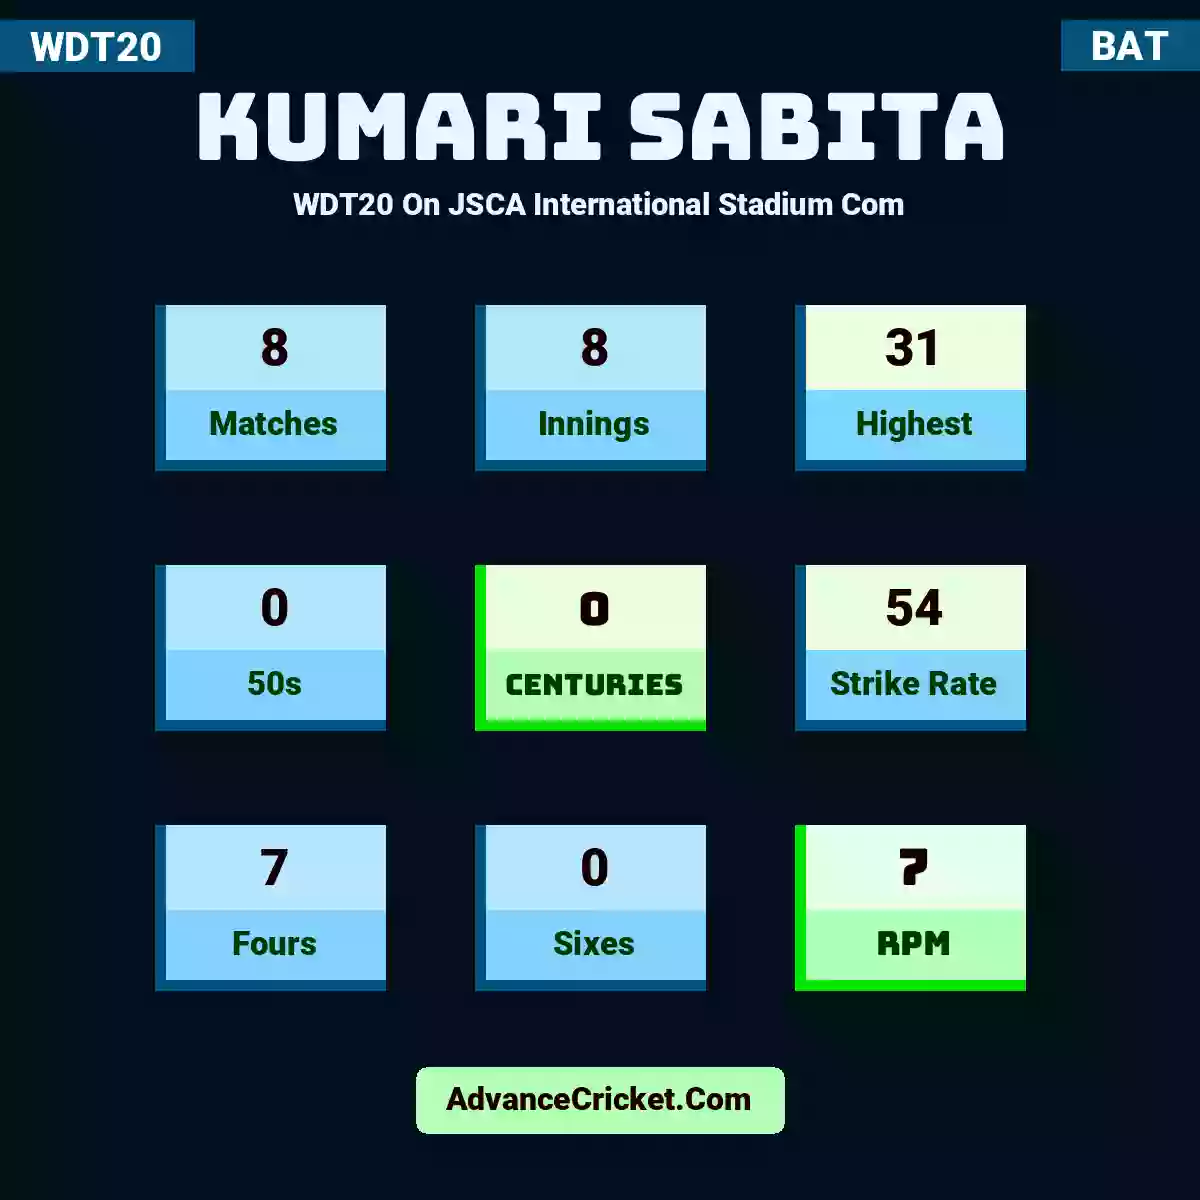 Kumari Sabita WDT20  On JSCA International Stadium Com, Kumari Sabita played 8 matches, scored 31 runs as highest, 0 half-centuries, and 0 centuries, with a strike rate of 54. K.Sabita hit 7 fours and 0 sixes, with an RPM of 7.